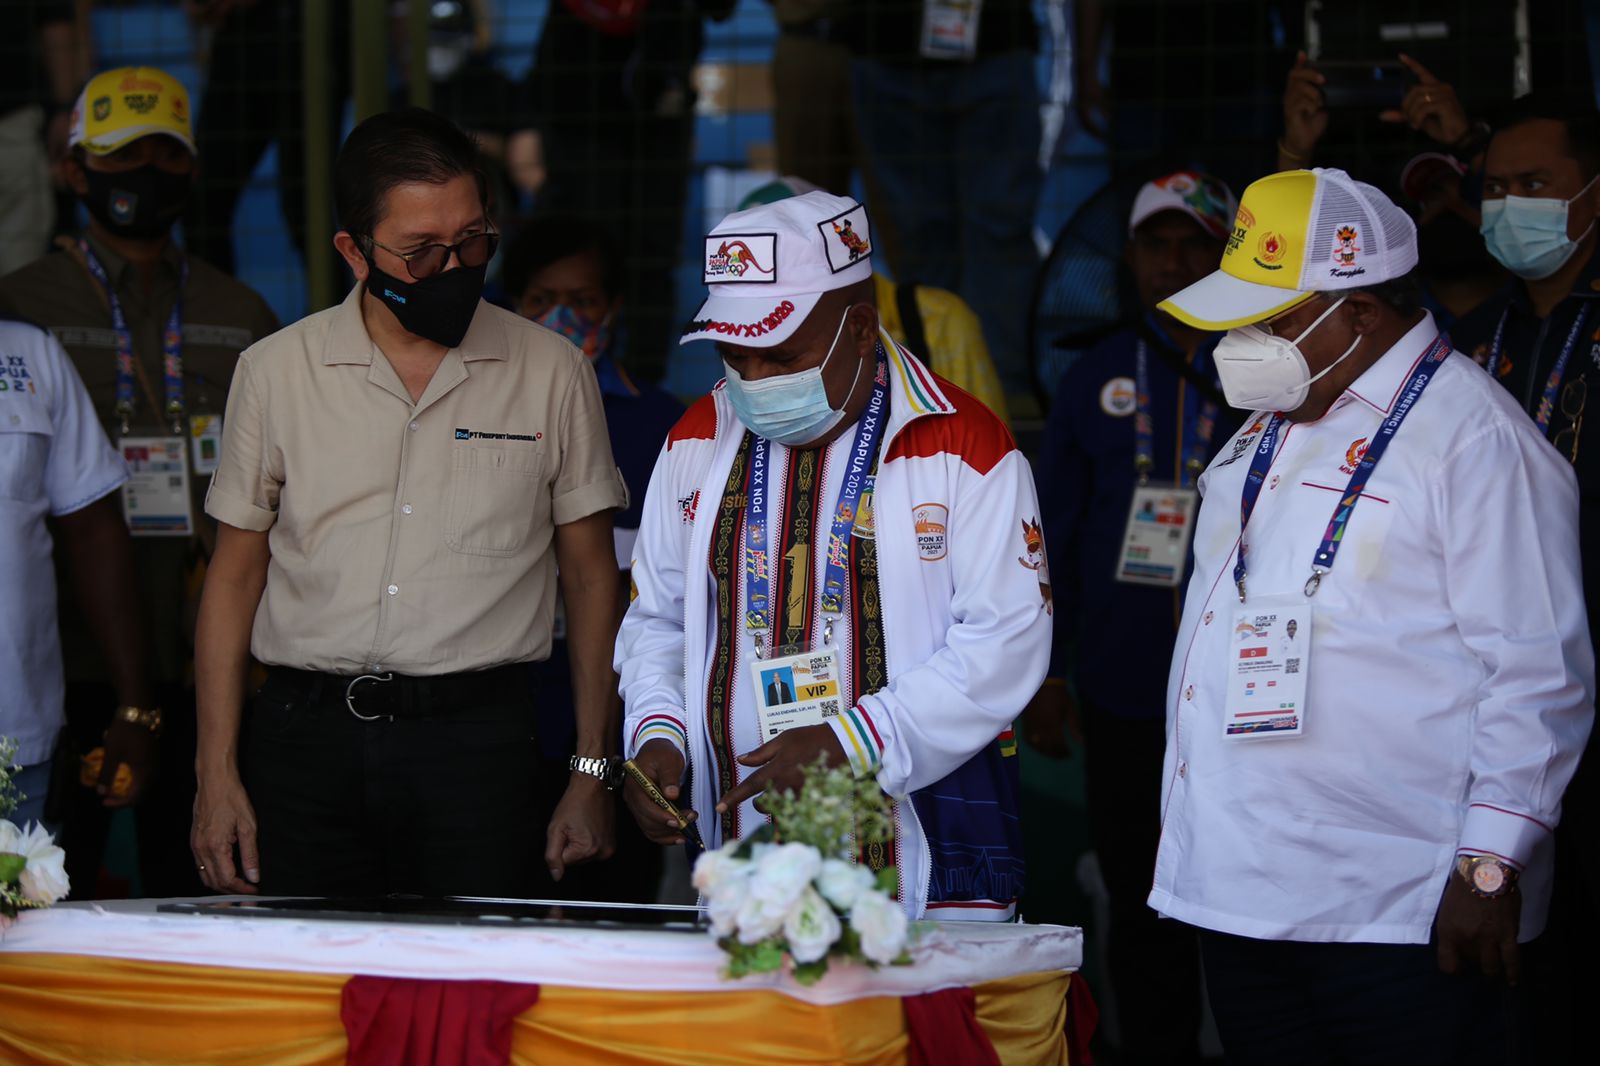 Gubernur Papua, Lukas Enembe didampingi Bupati Mimika dan Dirut PTFI menandatangani prasasti tanda diresmikannya venue Mimika Sport Compex, Selasa (5/10/2021). Foto: Humas PPM/Joseph Situmorang